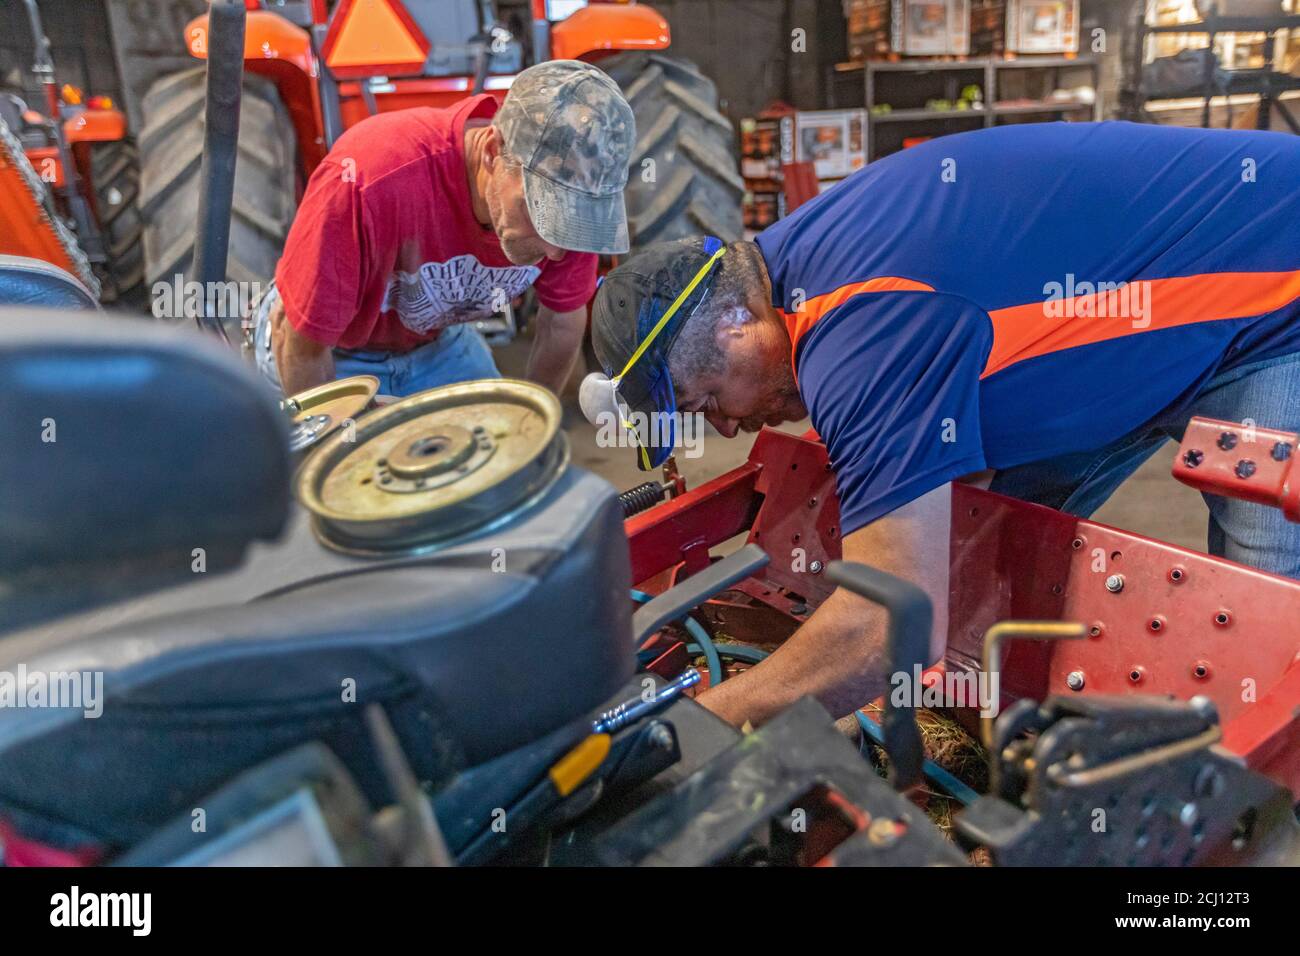 Detroit, Michigan - Mechaniker bei Detroit Grounds Crew Reparatur Mähmaschinen, die das Unternehmen verwendet, um Rasen in Parks, Schulen und vakanten Eigentum mähen Stockfoto